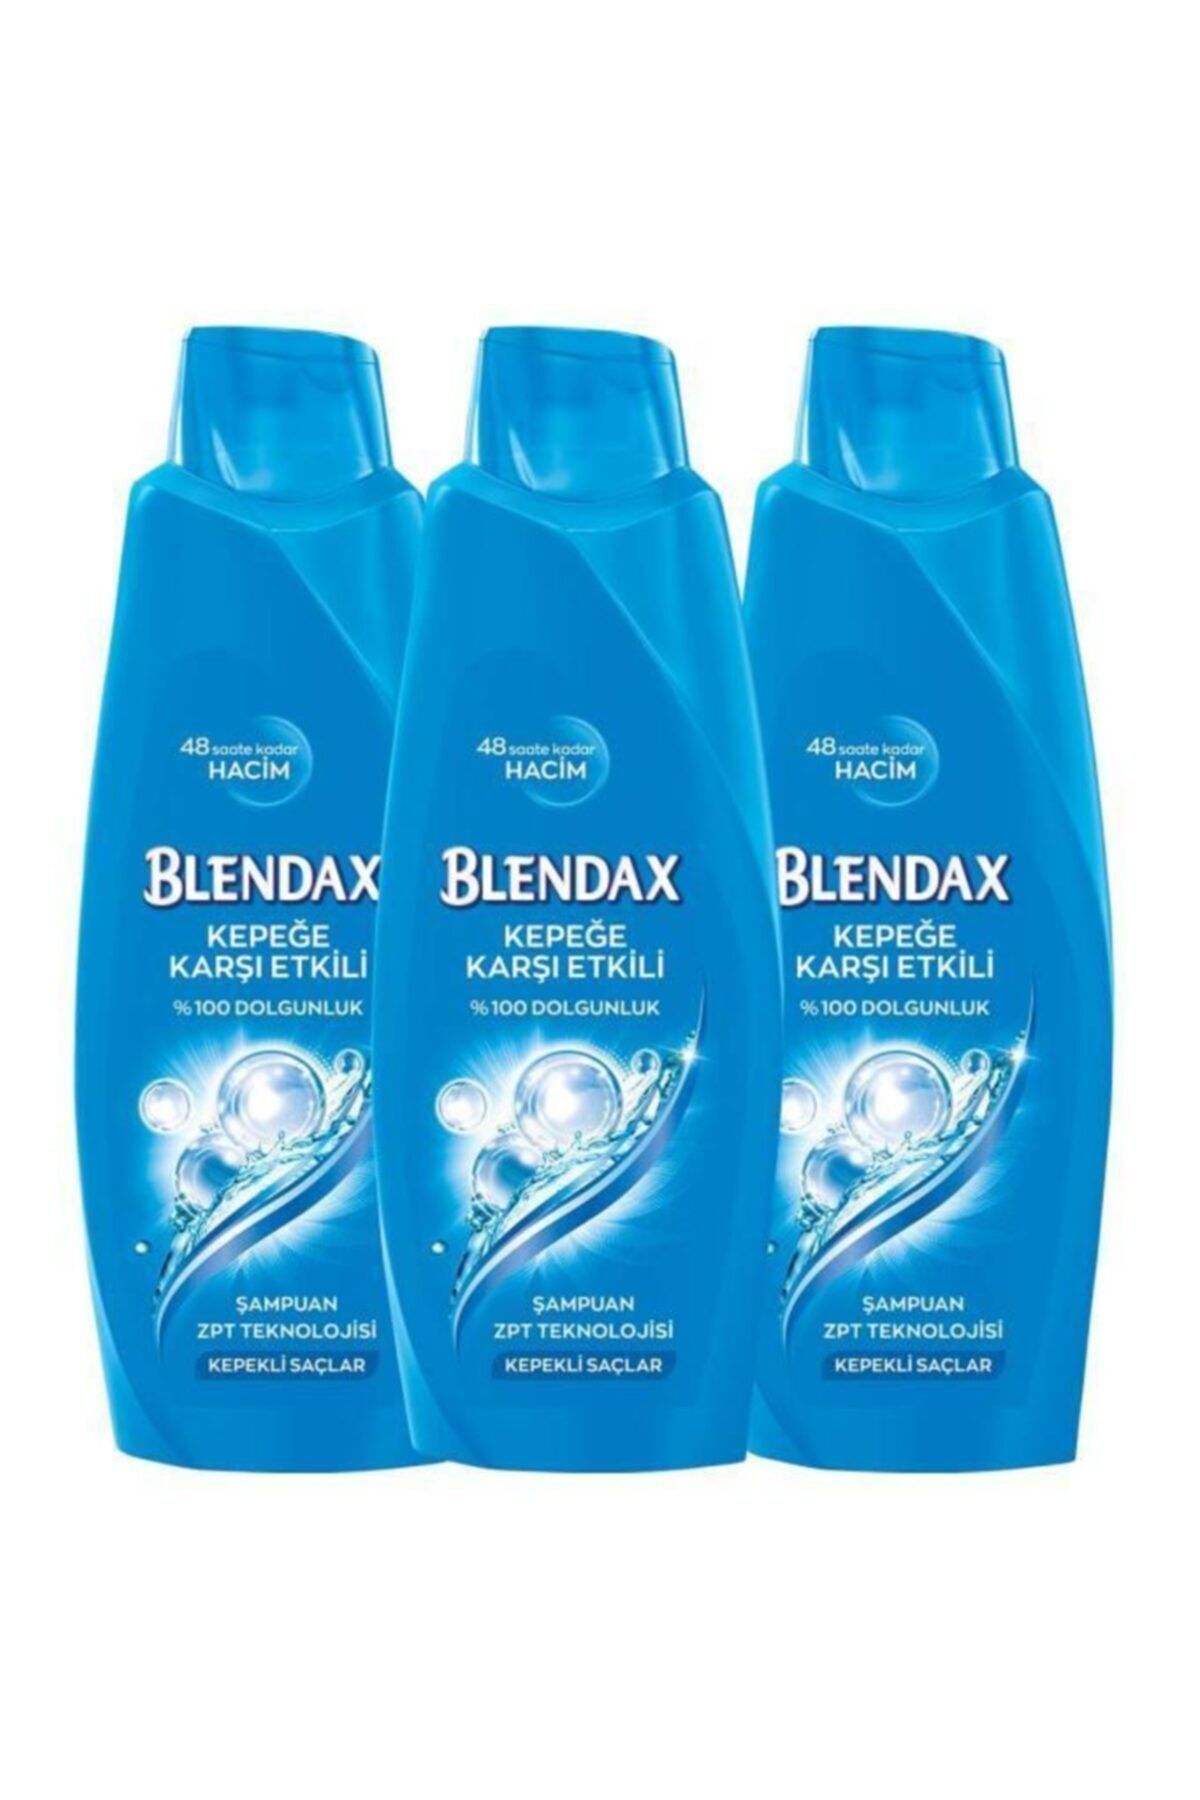 Blendax Kepeğe Karşı Etkili Şampuan 500 Ml X 3 Adet